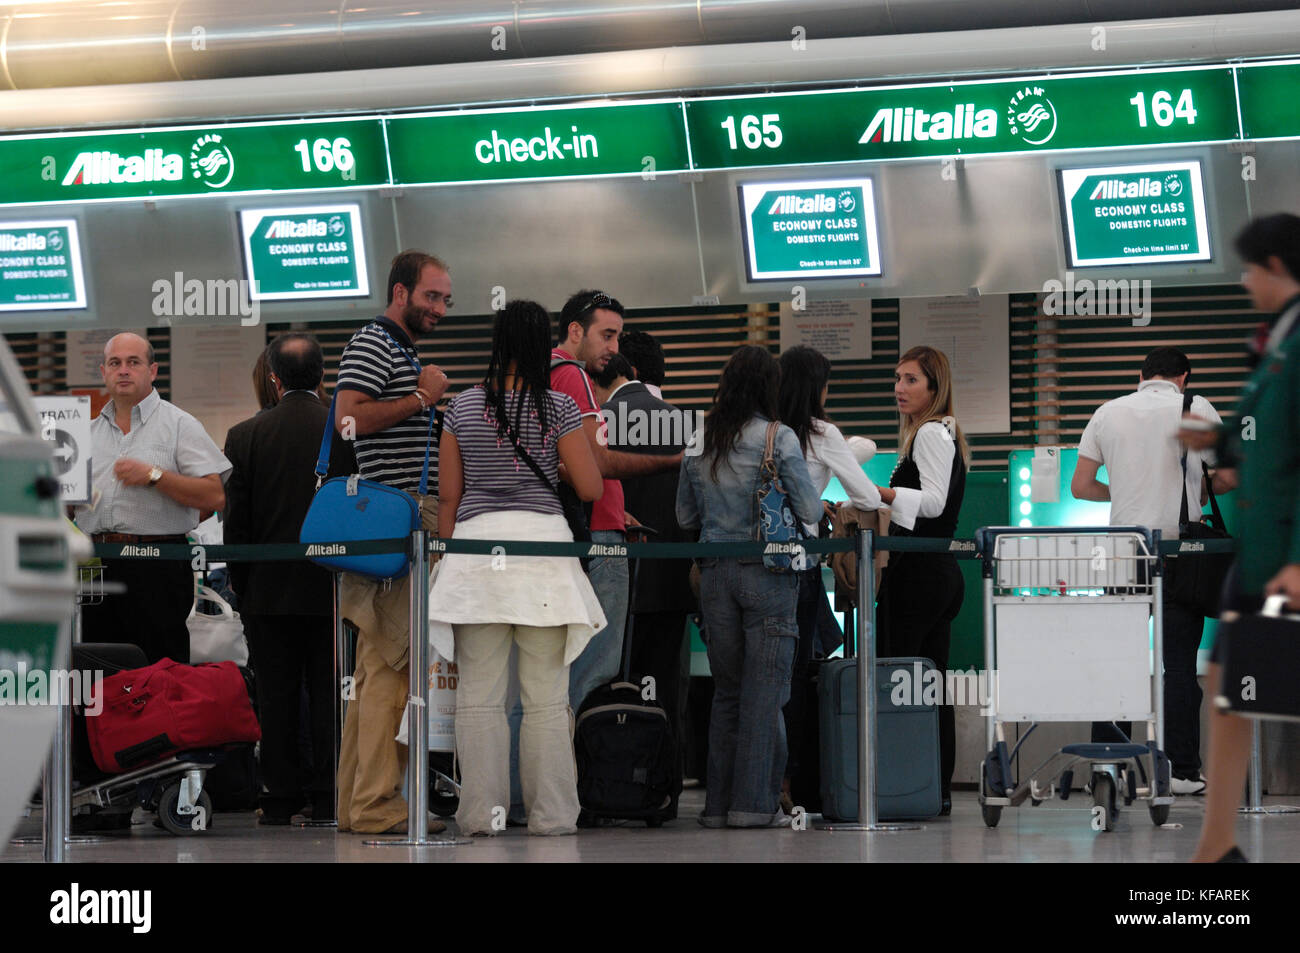 Passagiere mit Gepäck an der Alitalia Check-in-Schalter im Terminal  Stockfotografie - Alamy